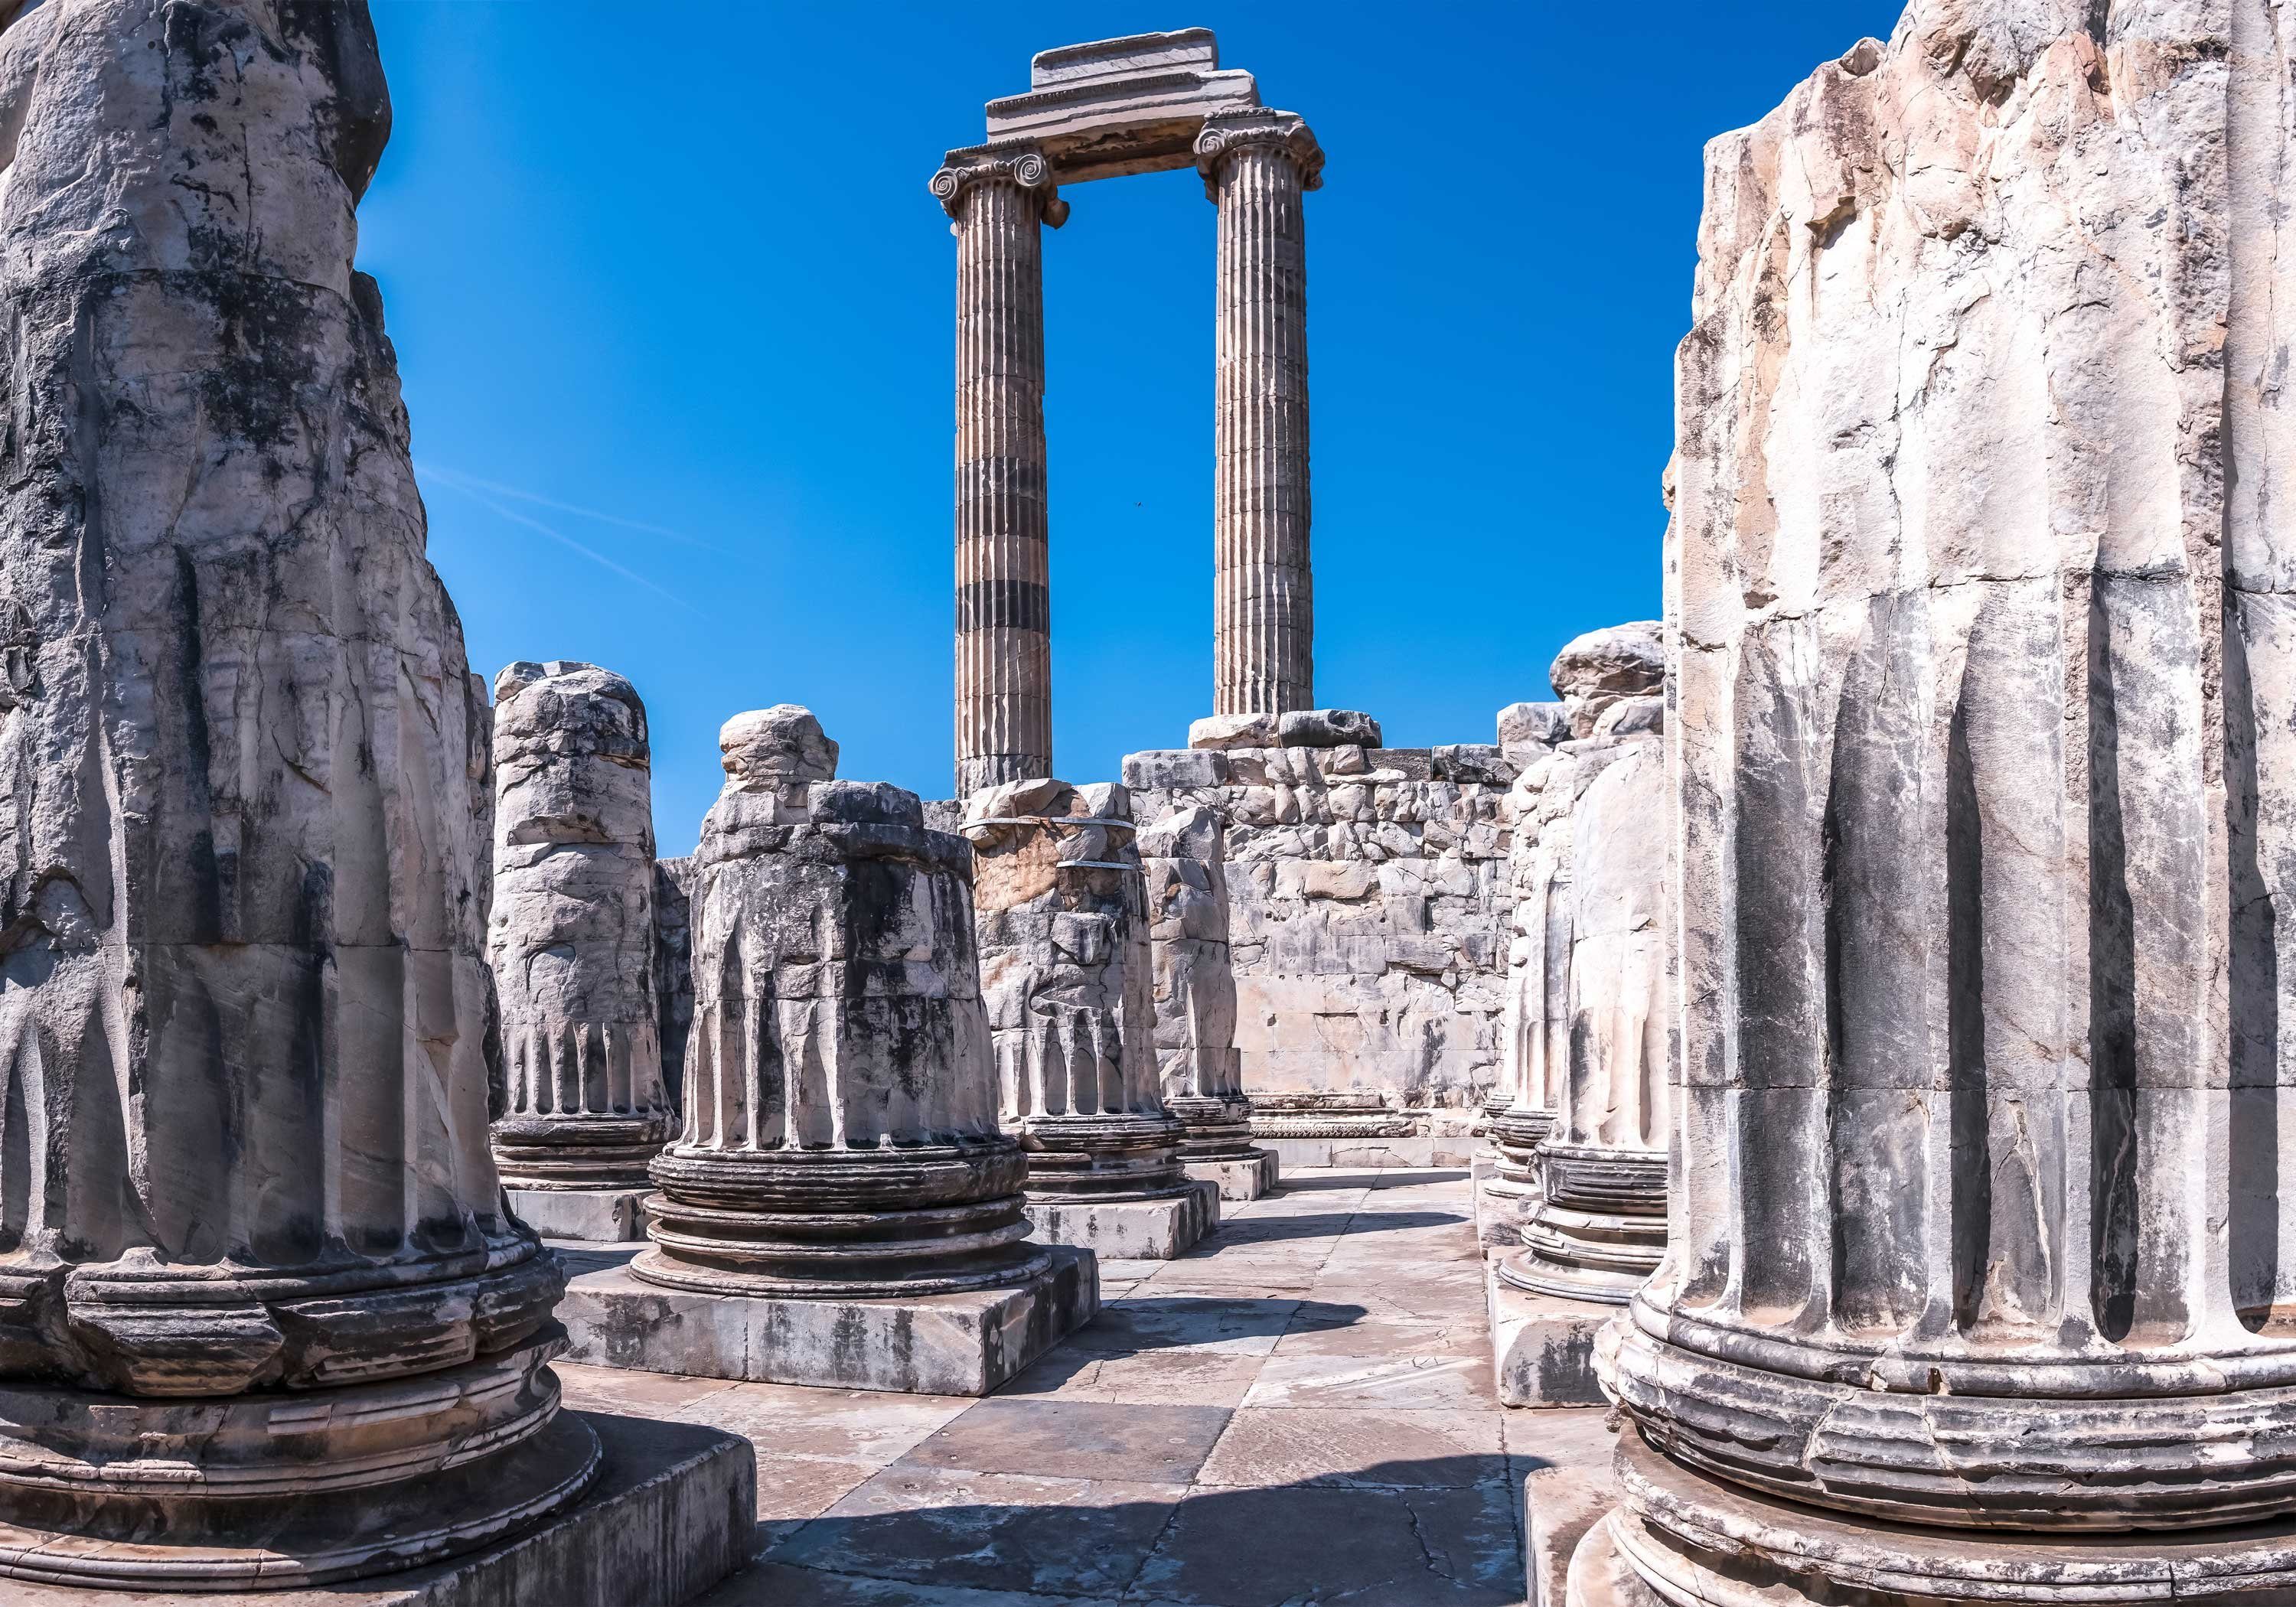 wandmotiv24 Fototapete Griechische Ruinen Säulen, glatt, Wandtapete, Motivtapete, matt, Vliestapete